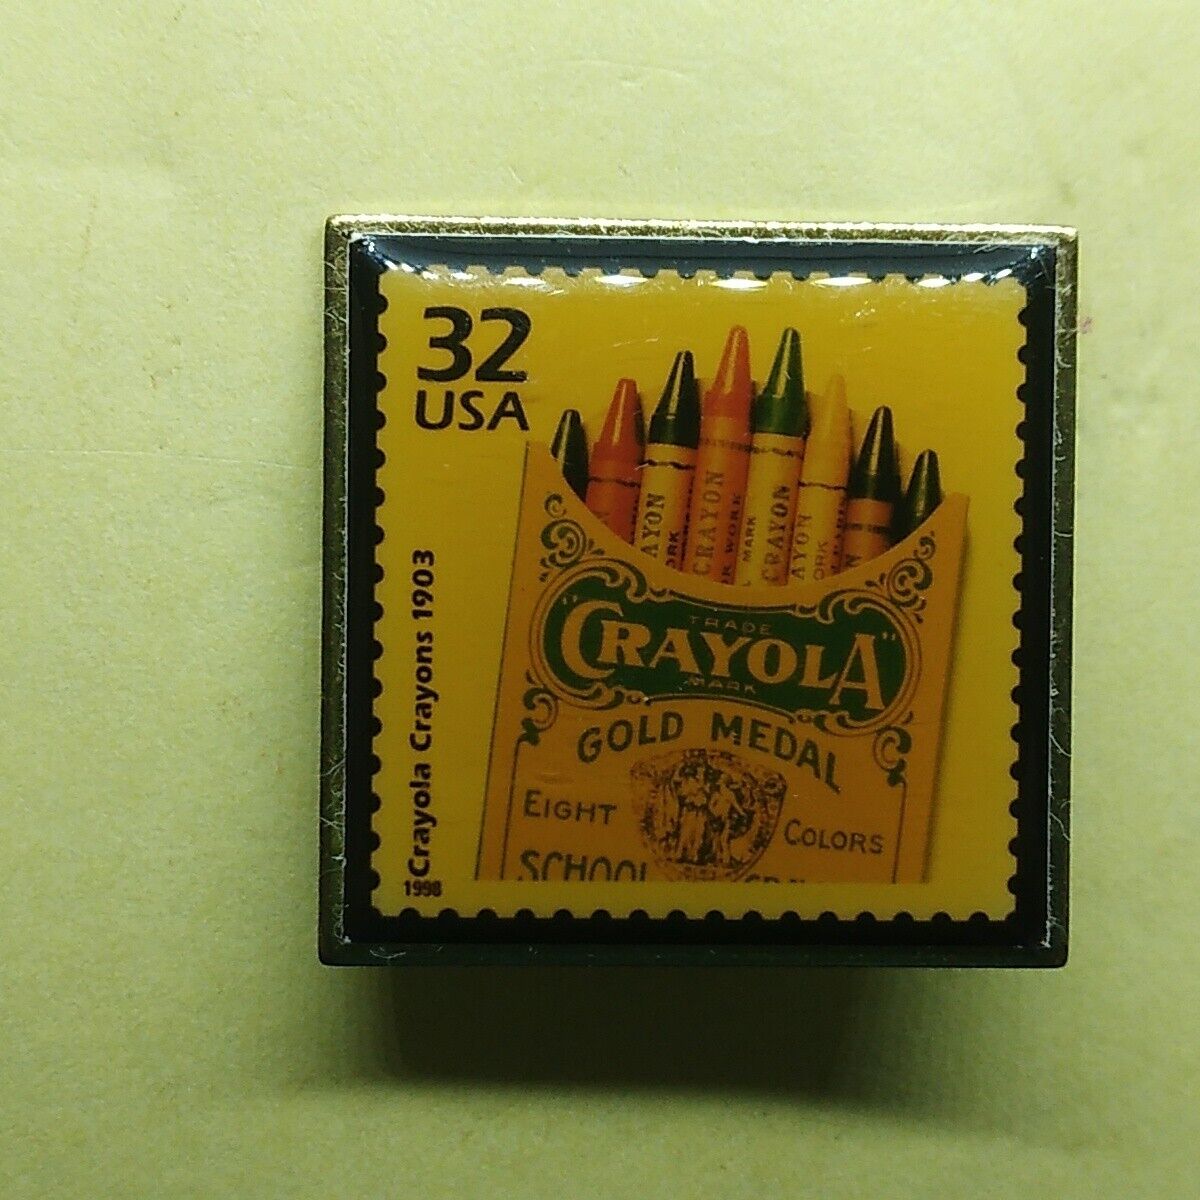 Crayola Crayons USPS 32 Cent USA Postal Stamp Lapel Pin Collectible